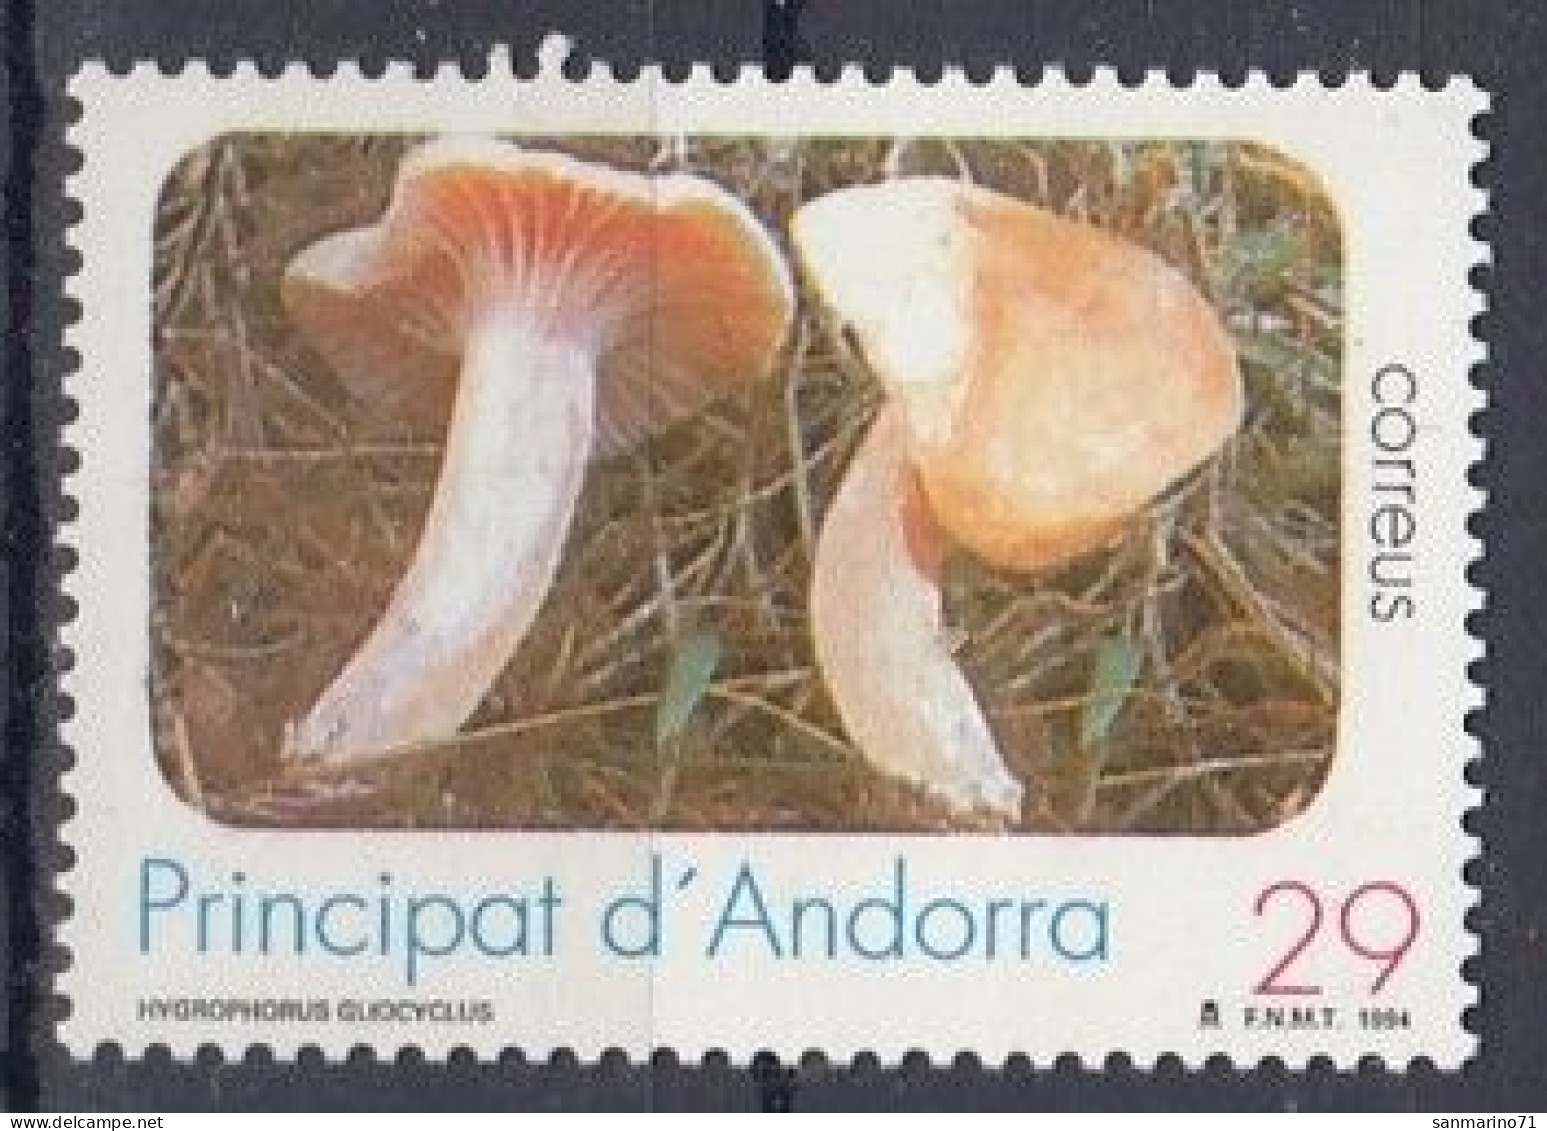 SPANISH ANDORRA 239,unused - Mushrooms